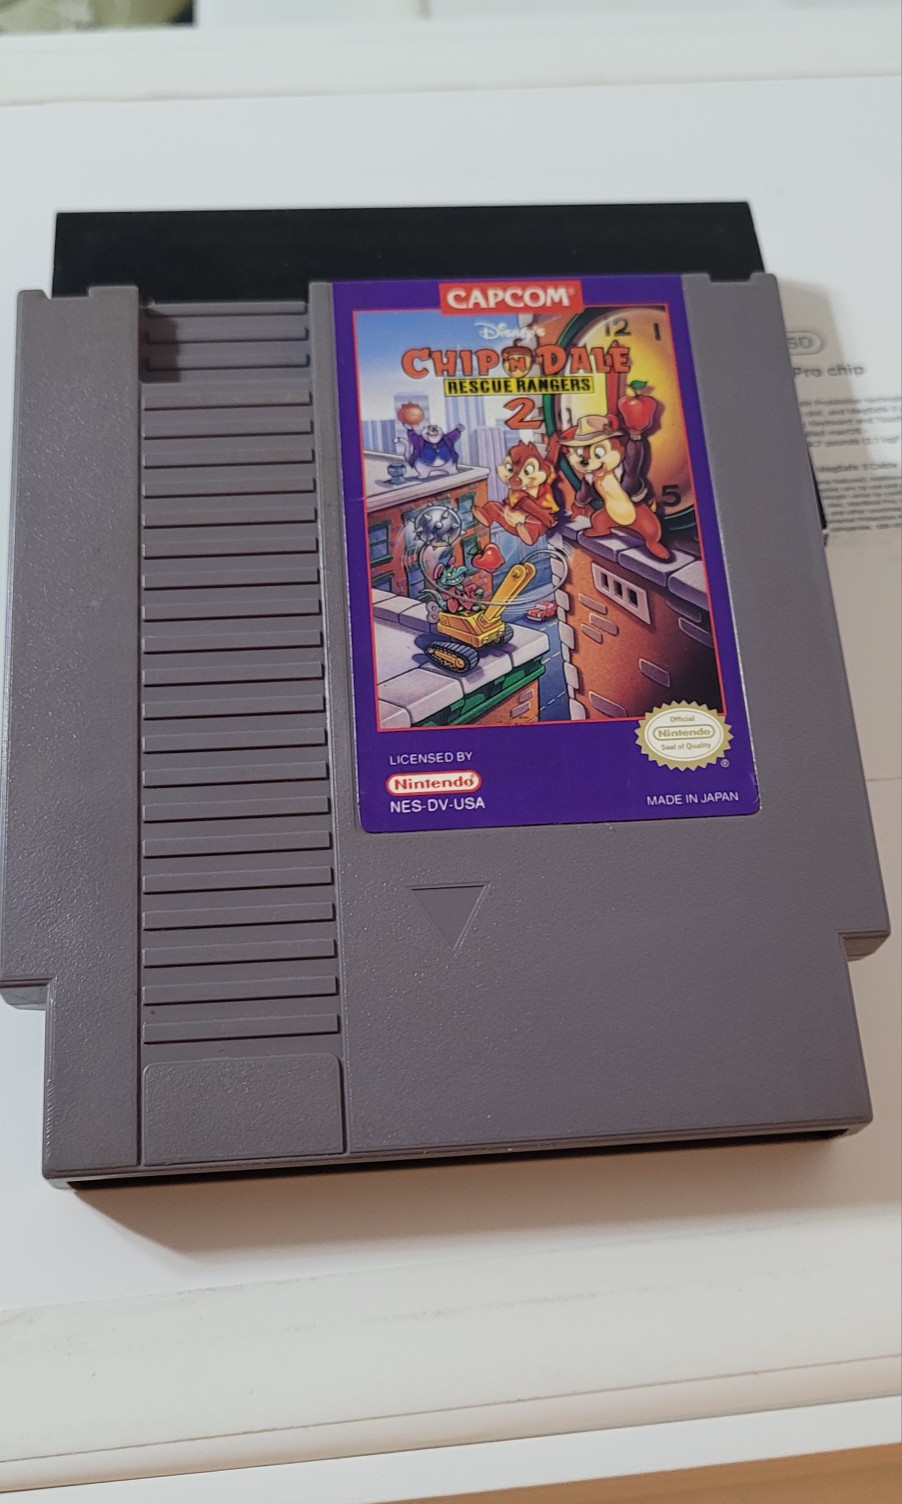 consolas y videojuegos - Nintendo Nes Chip N Dale 2 Original